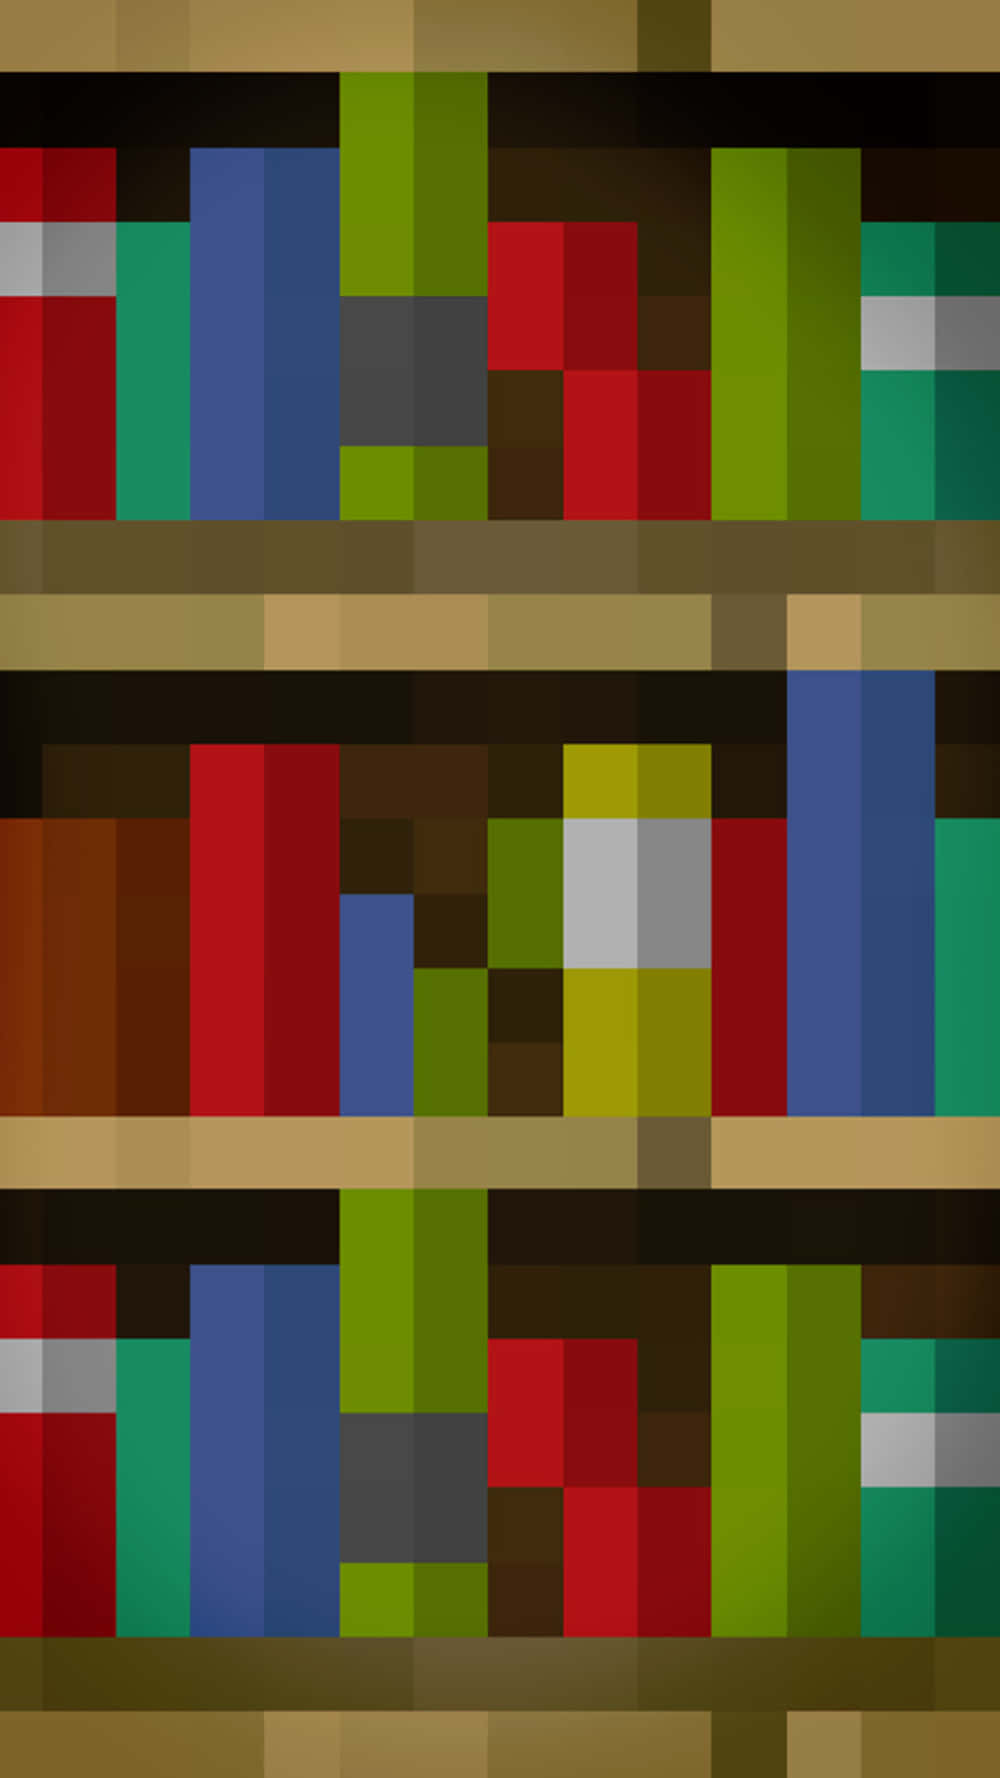 Fondode Pantalla Del Pixel 3 Xl De Minecraft Con Libros De Colores.